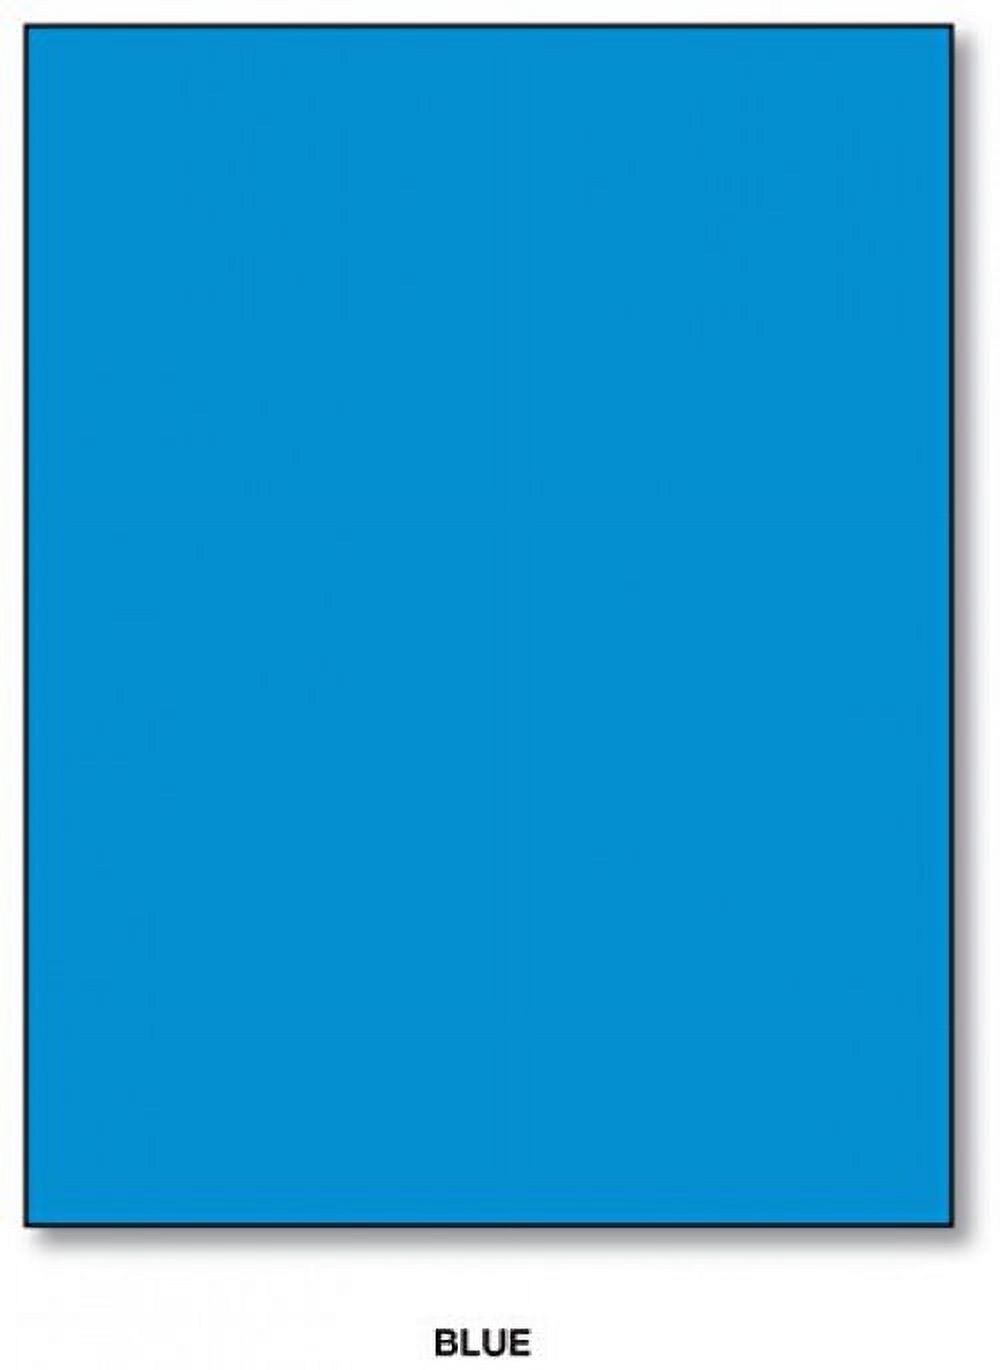 Mohawk BriteHue Bright Color Paper | Blue | 24lb Bond / 60lb Text Paper |  8.5" x 11" (Letter Size) | 100 Sheets Per Pack - image 2 of 2